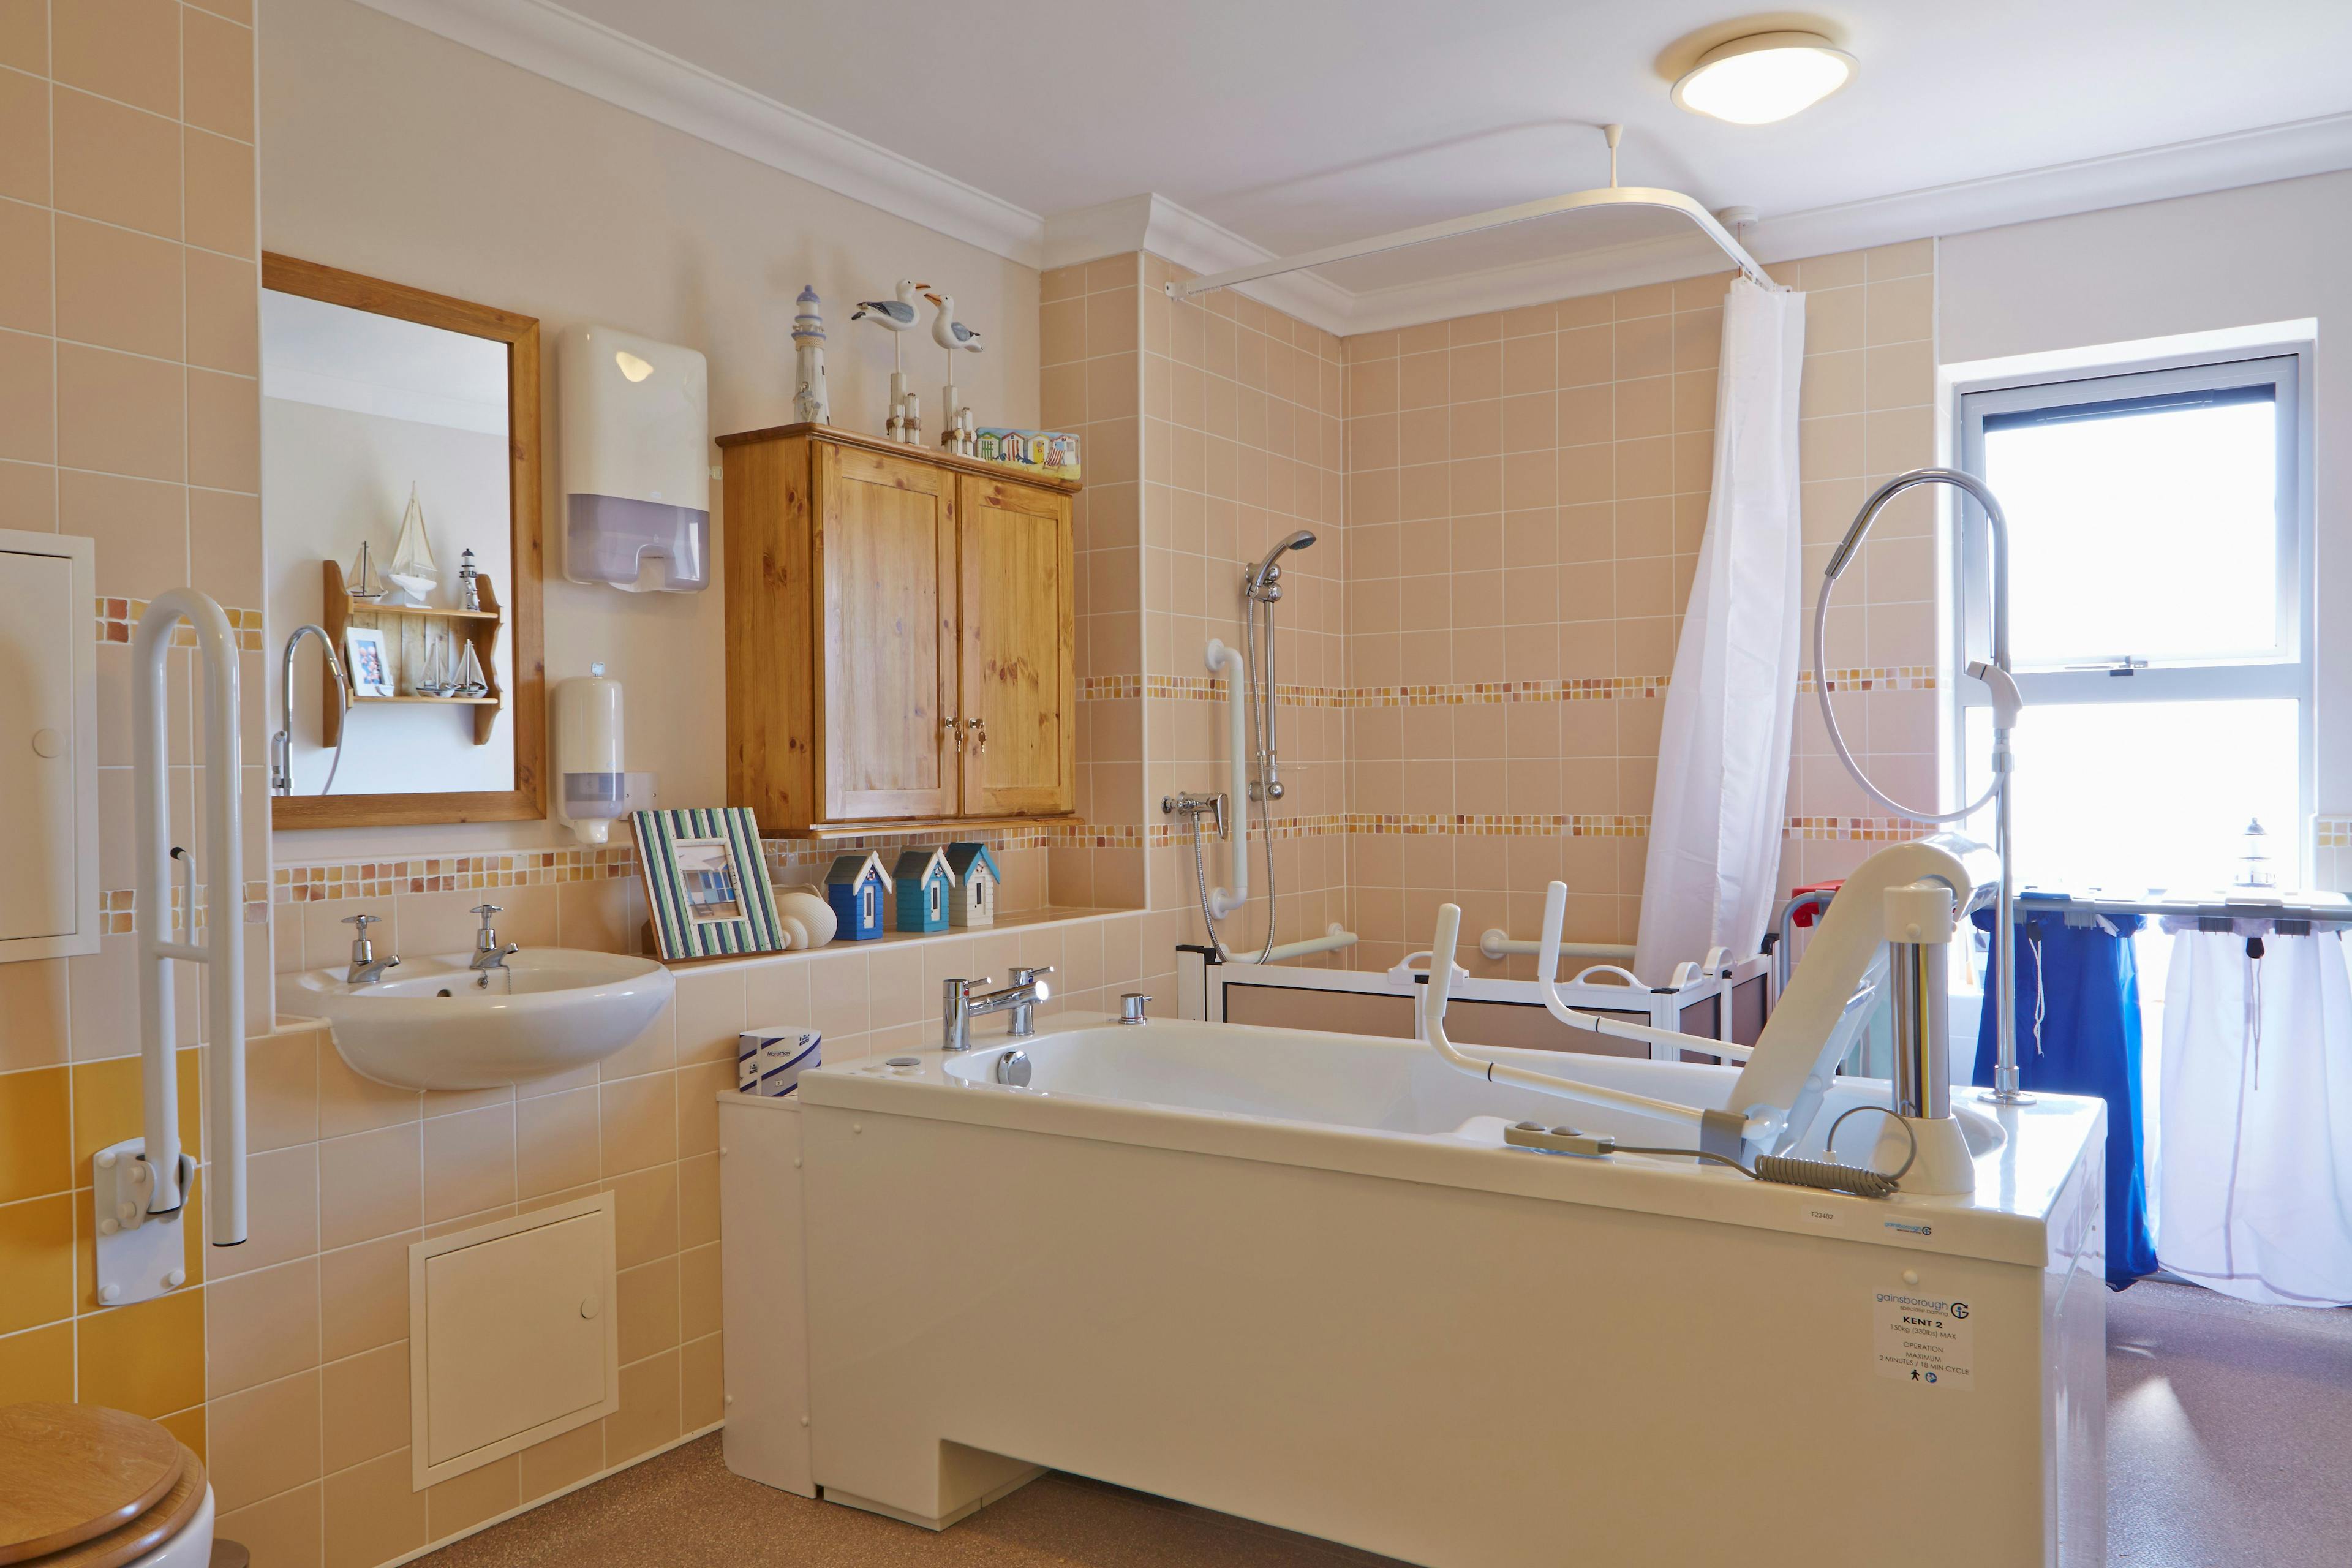 Bathroom of Lancaster Grange Care Home in Newark-on-Trent, Nottinghamshire 